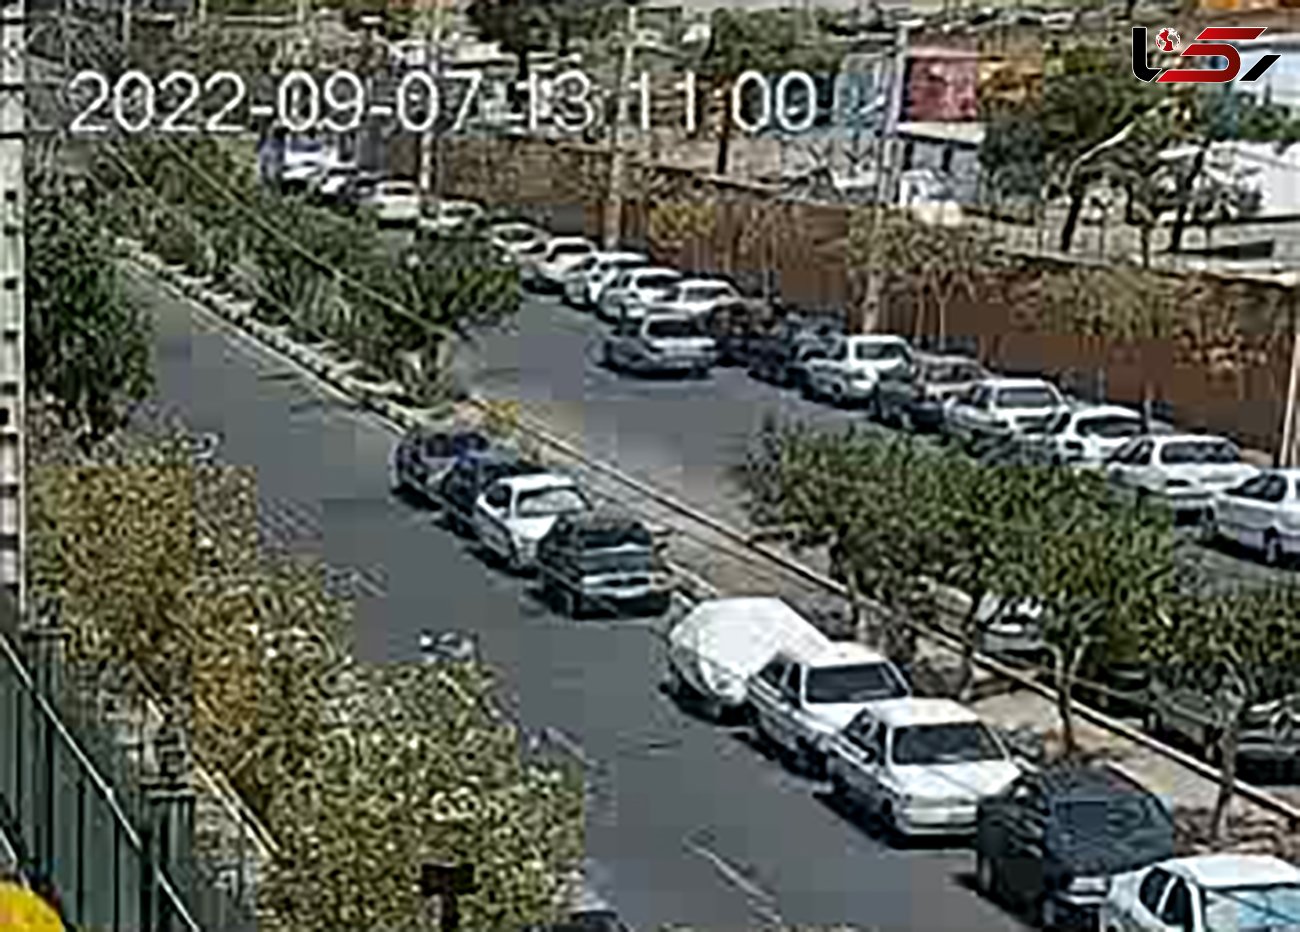 فیلم حمله با تبر دزدان به 2 مرد که از صحنه سرقت آنها را فیلمبرداری می کردند / در تهران رخ داد